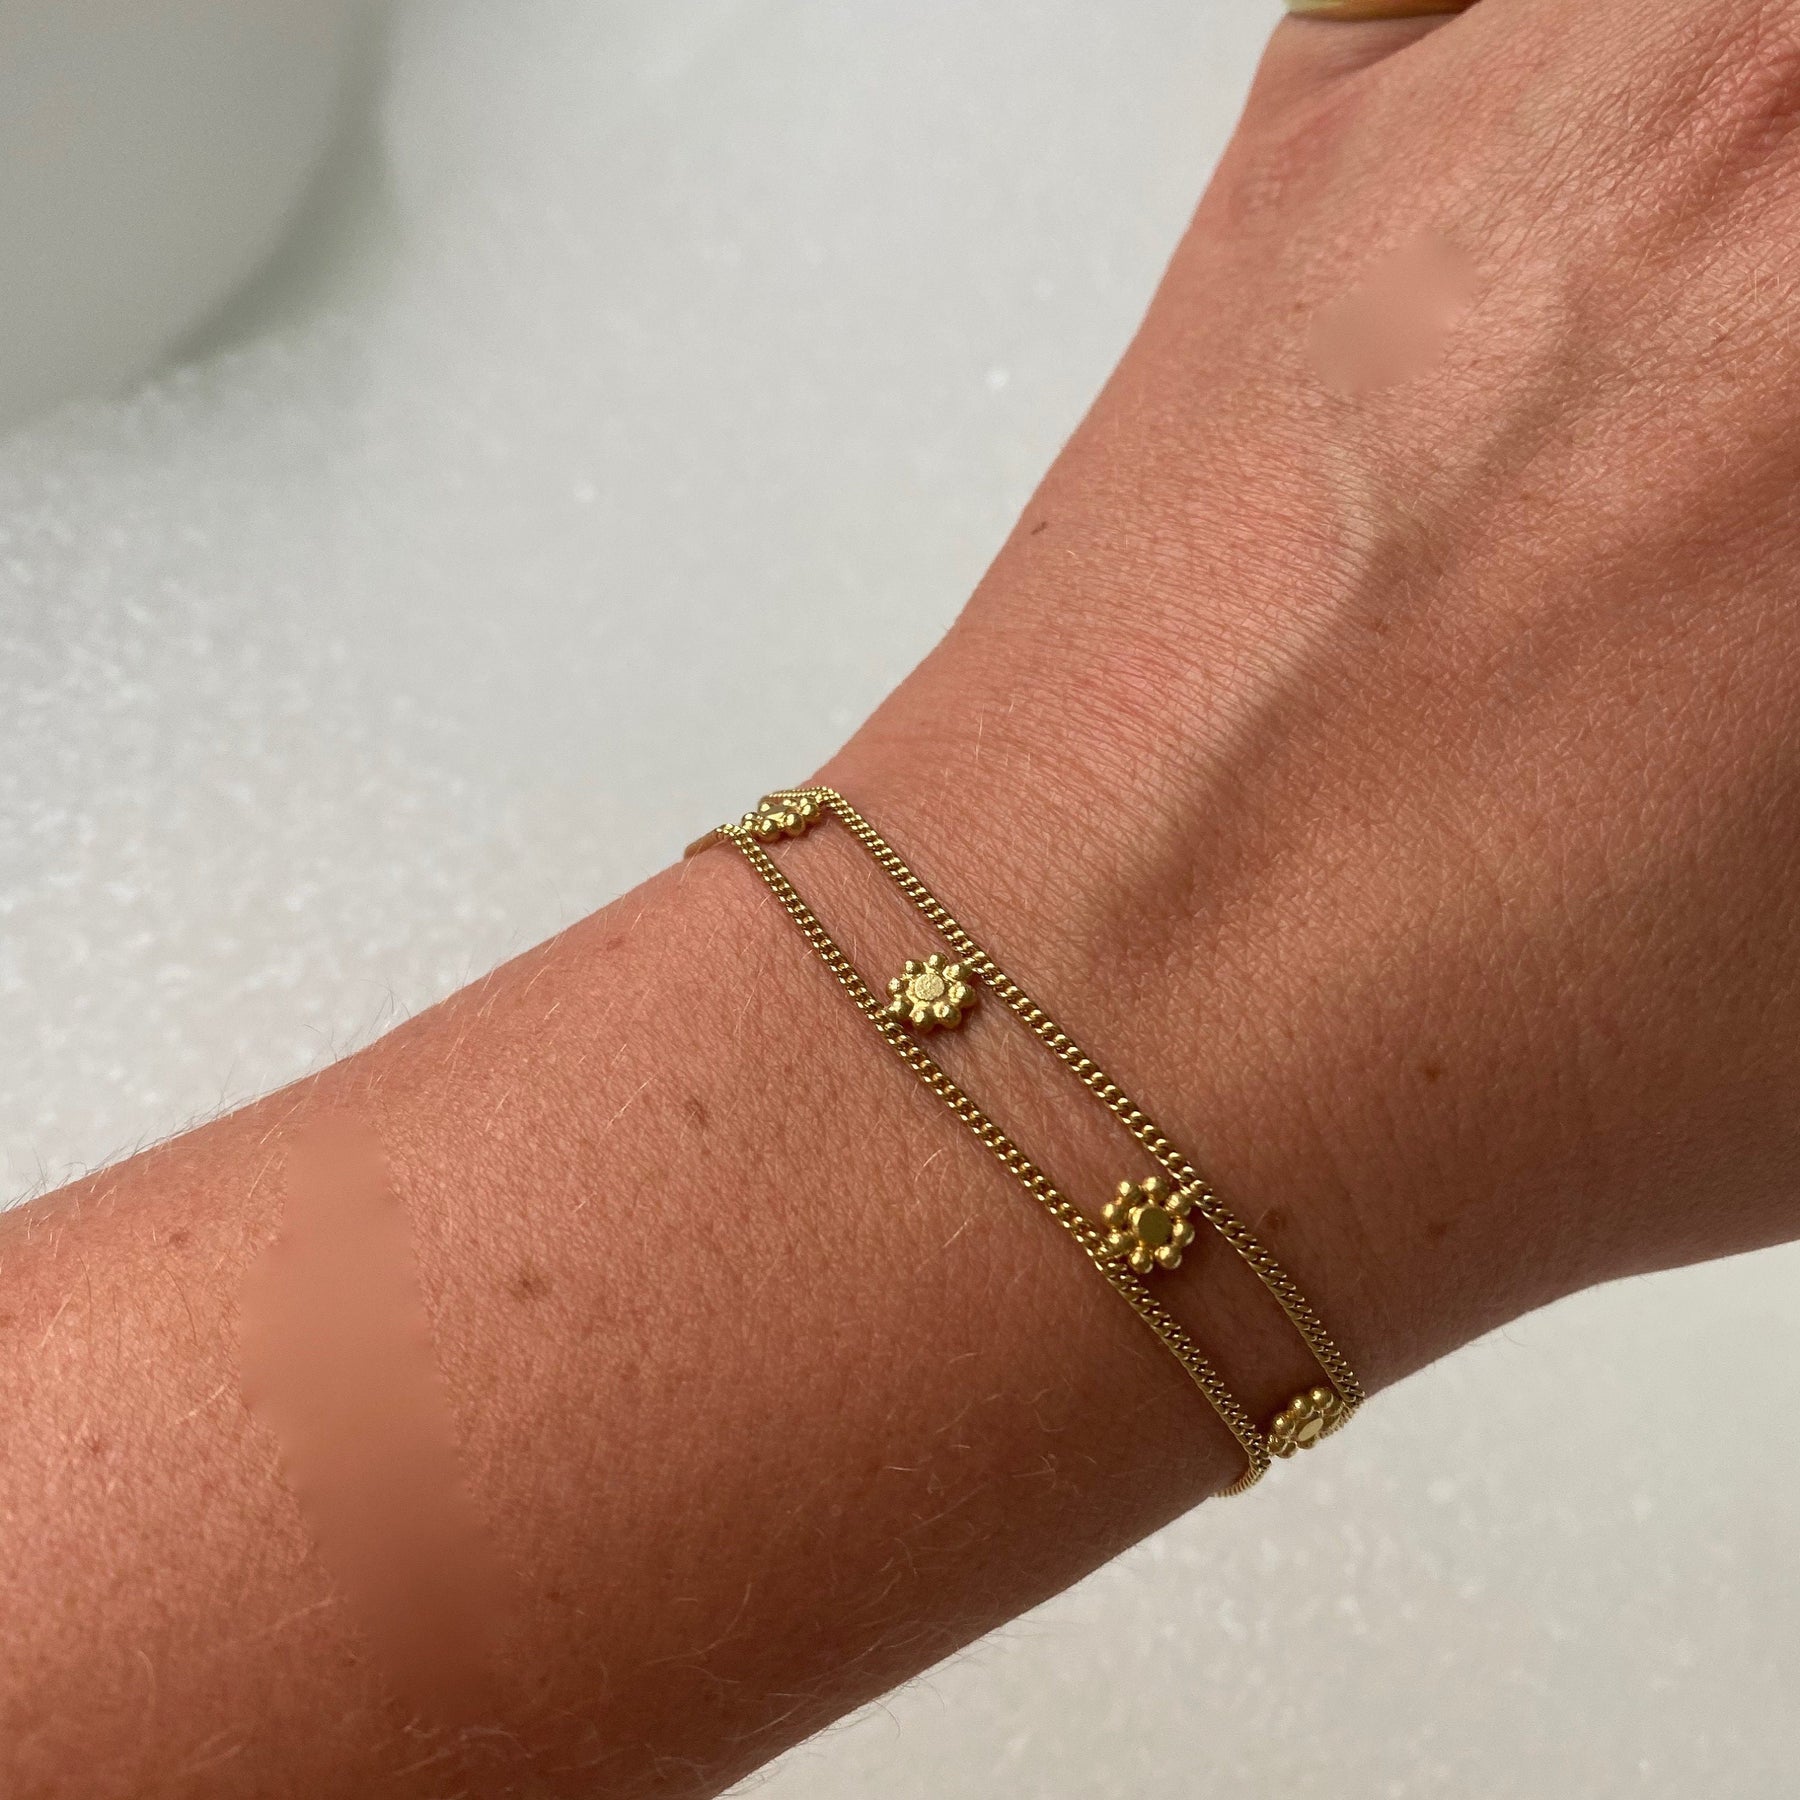  Moodear Gold Bracelets for Women 14K Gold Jewelry Sets